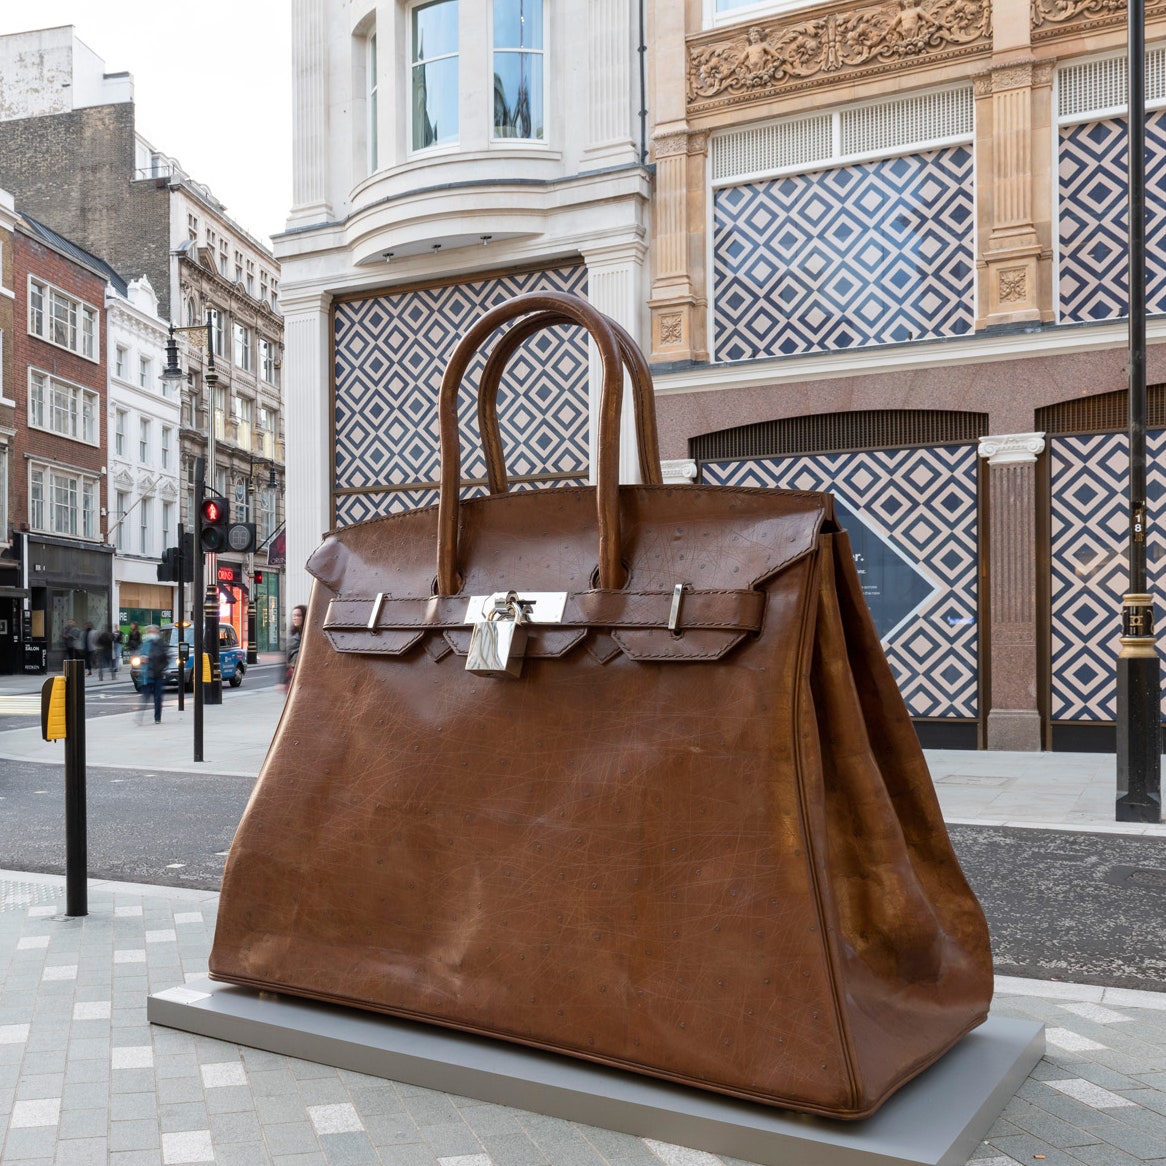 Взгляните на гигантскую скульптуру сумки Hermès Birkin